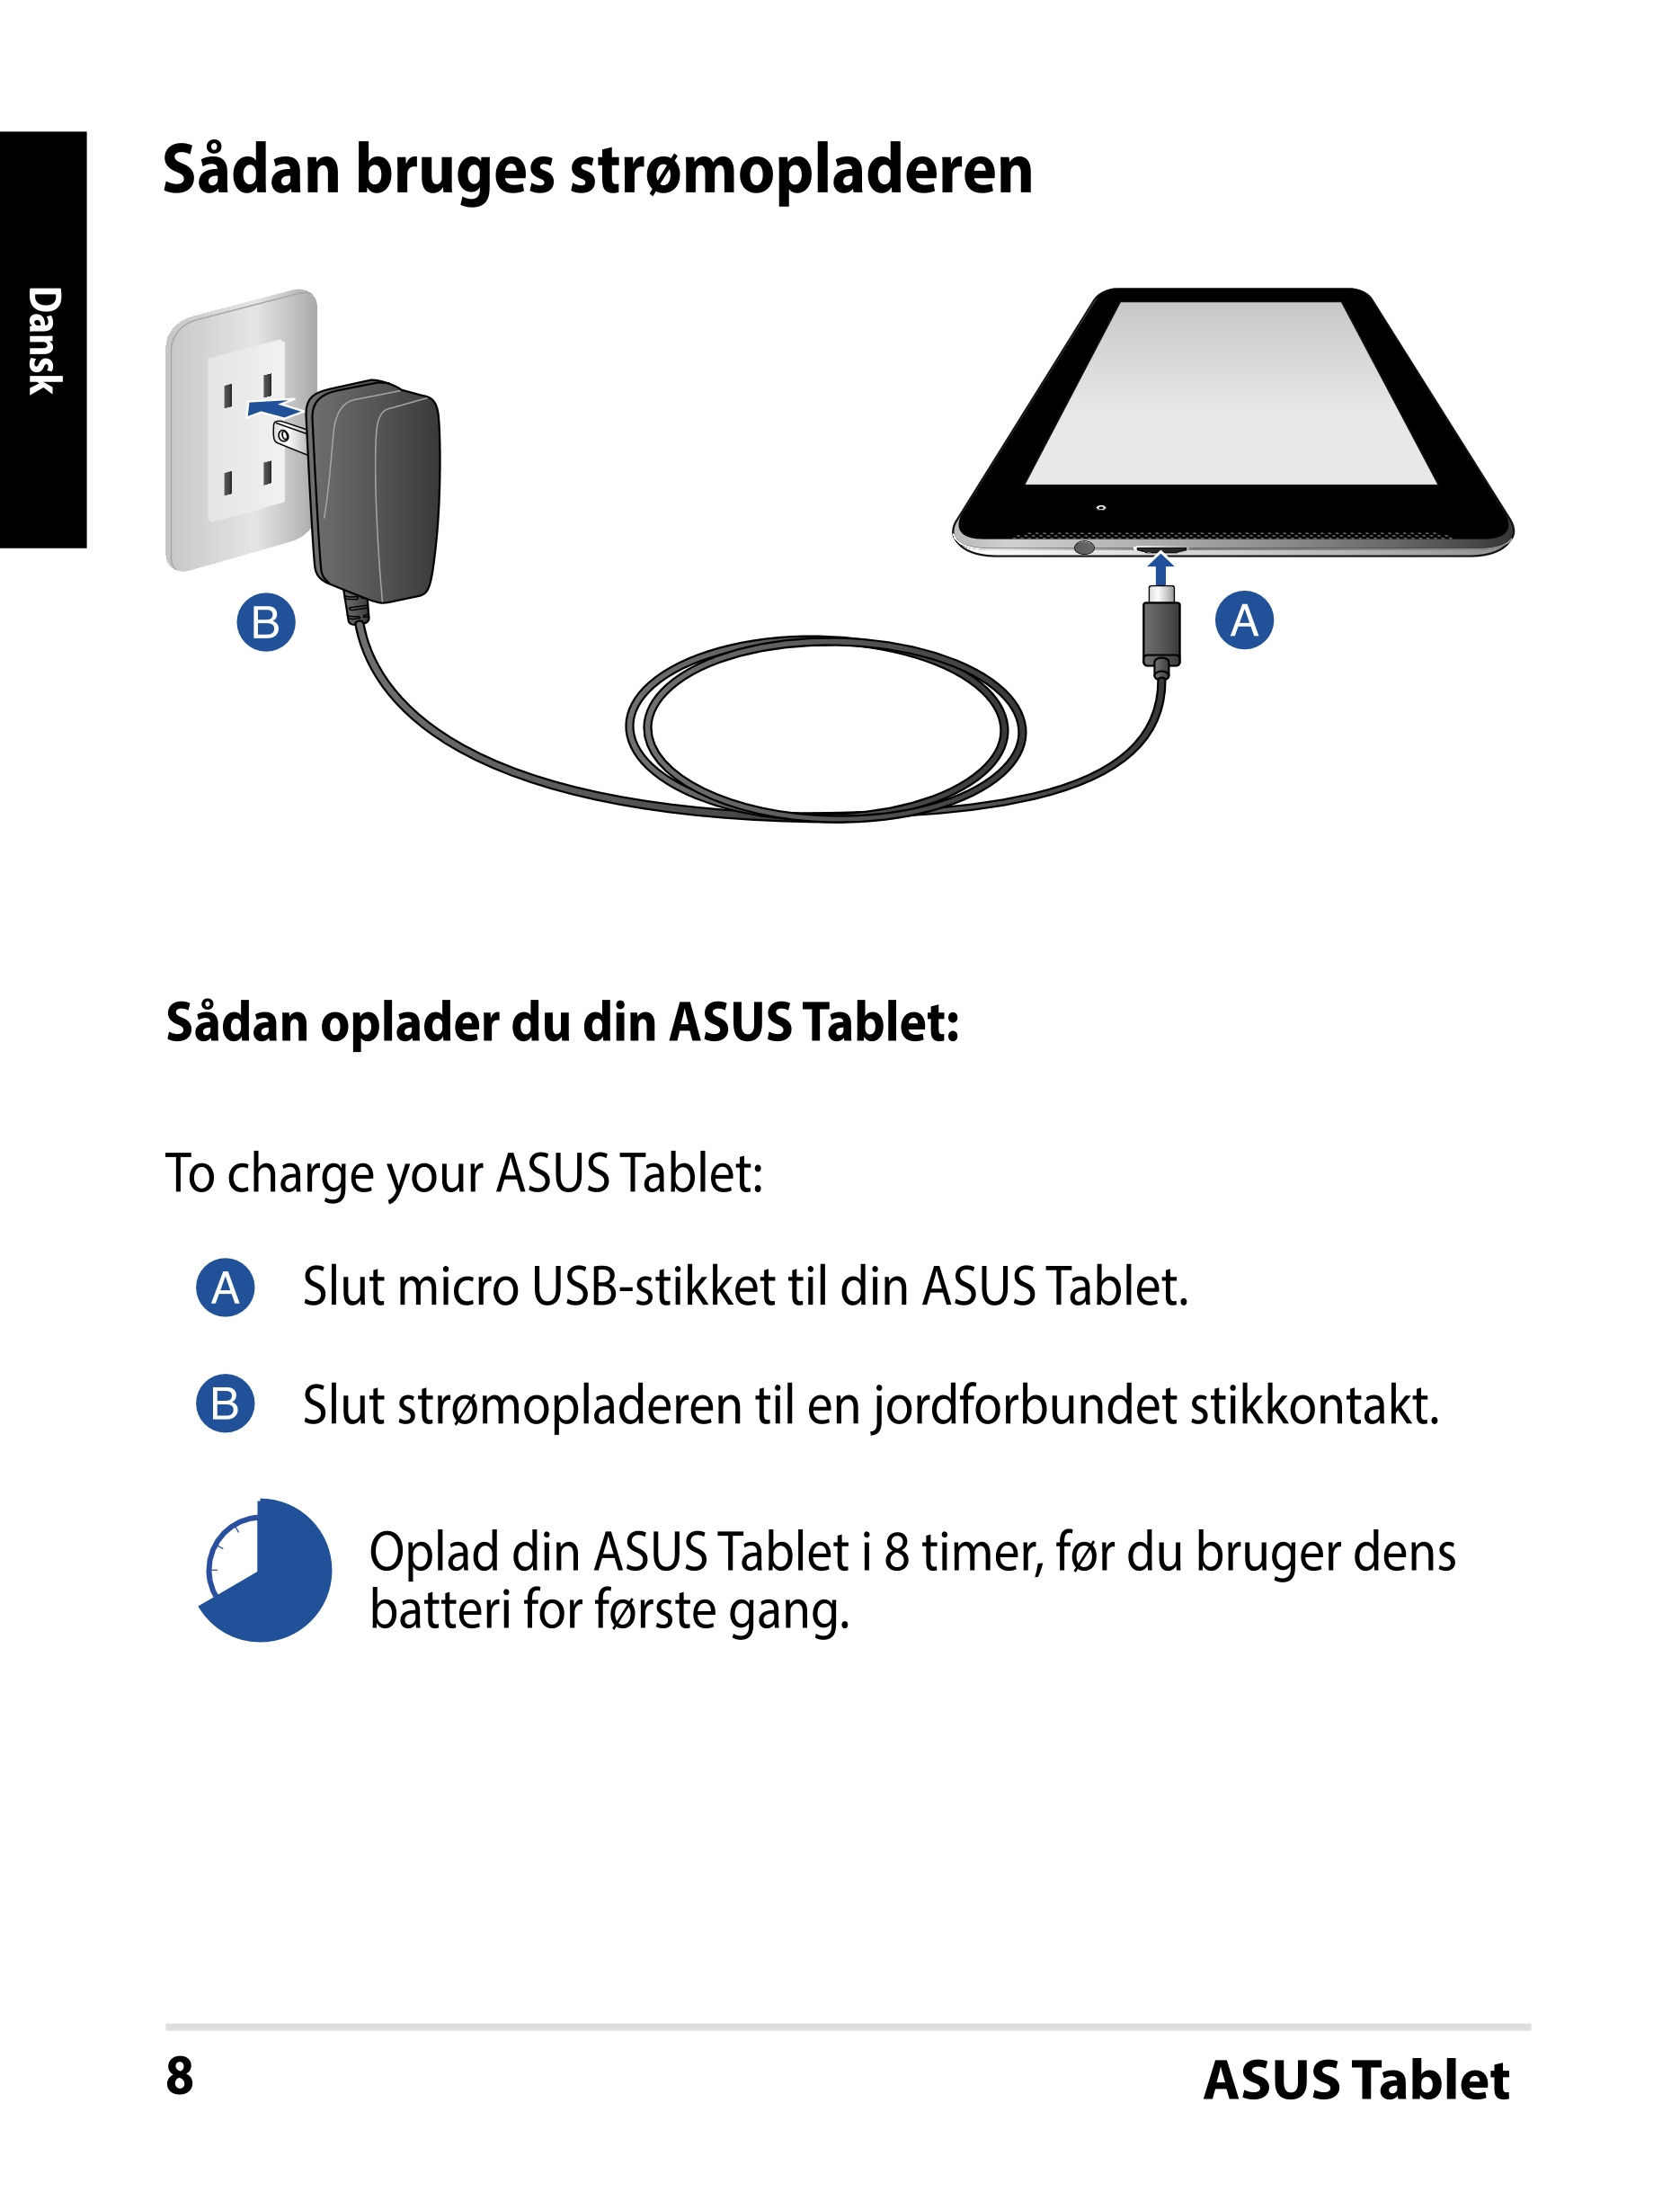 Sådan bruges strømopladeren
Dansk
Sådan oplader du din ASUS Tablet:
To charge your ASUS Tablet:
Slut micro USB-stikket til din A